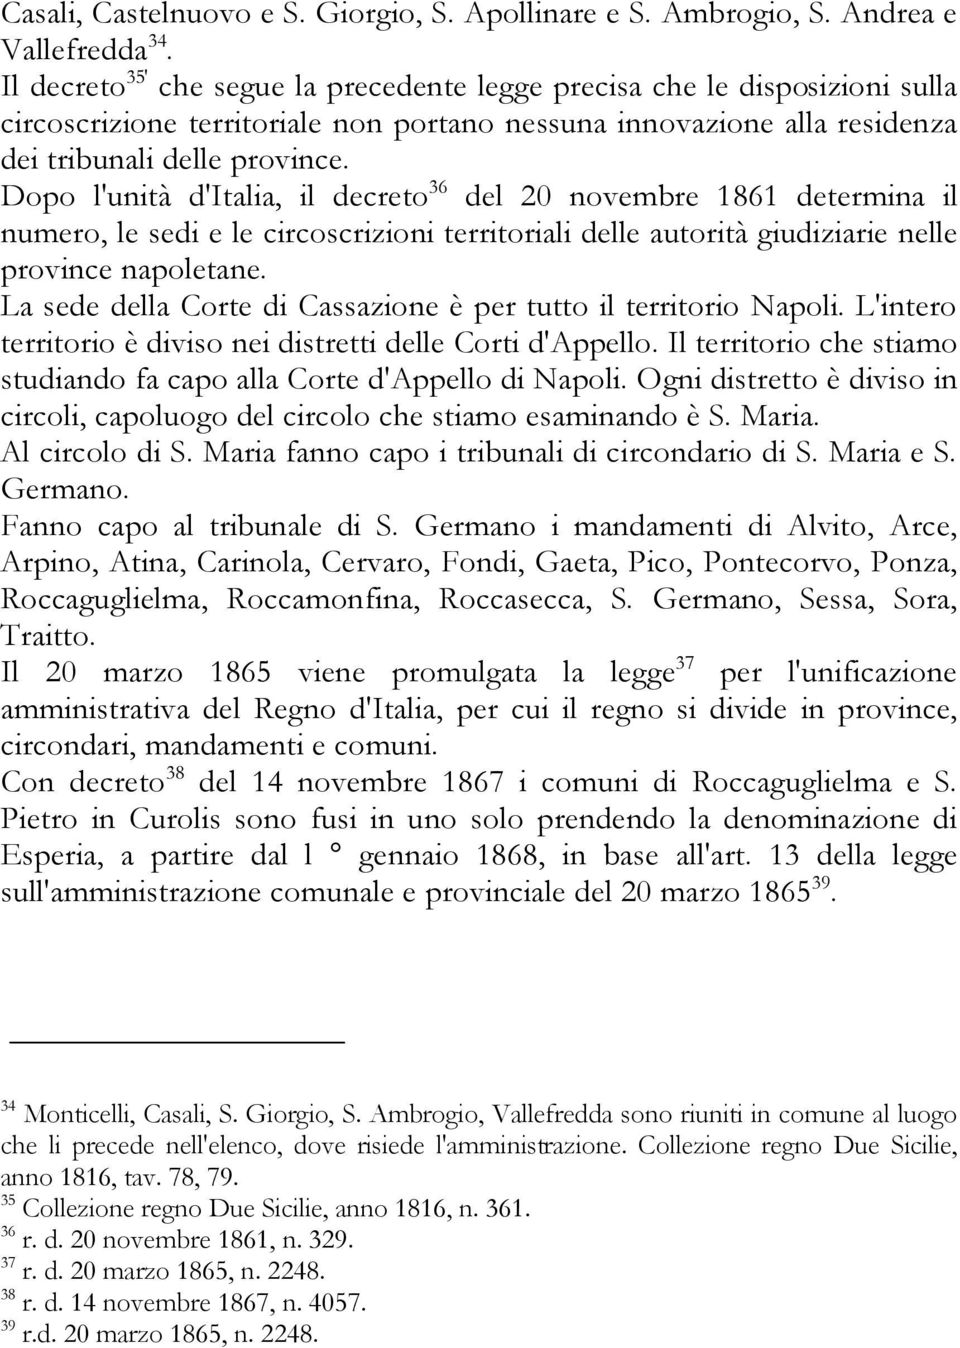 Dopo l'unità d'italia, il decreto 36 del 20 novembre 1861 determina il numero, le sedi e le circoscrizioni territoriali delle autorità giudiziarie nelle province napoletane.